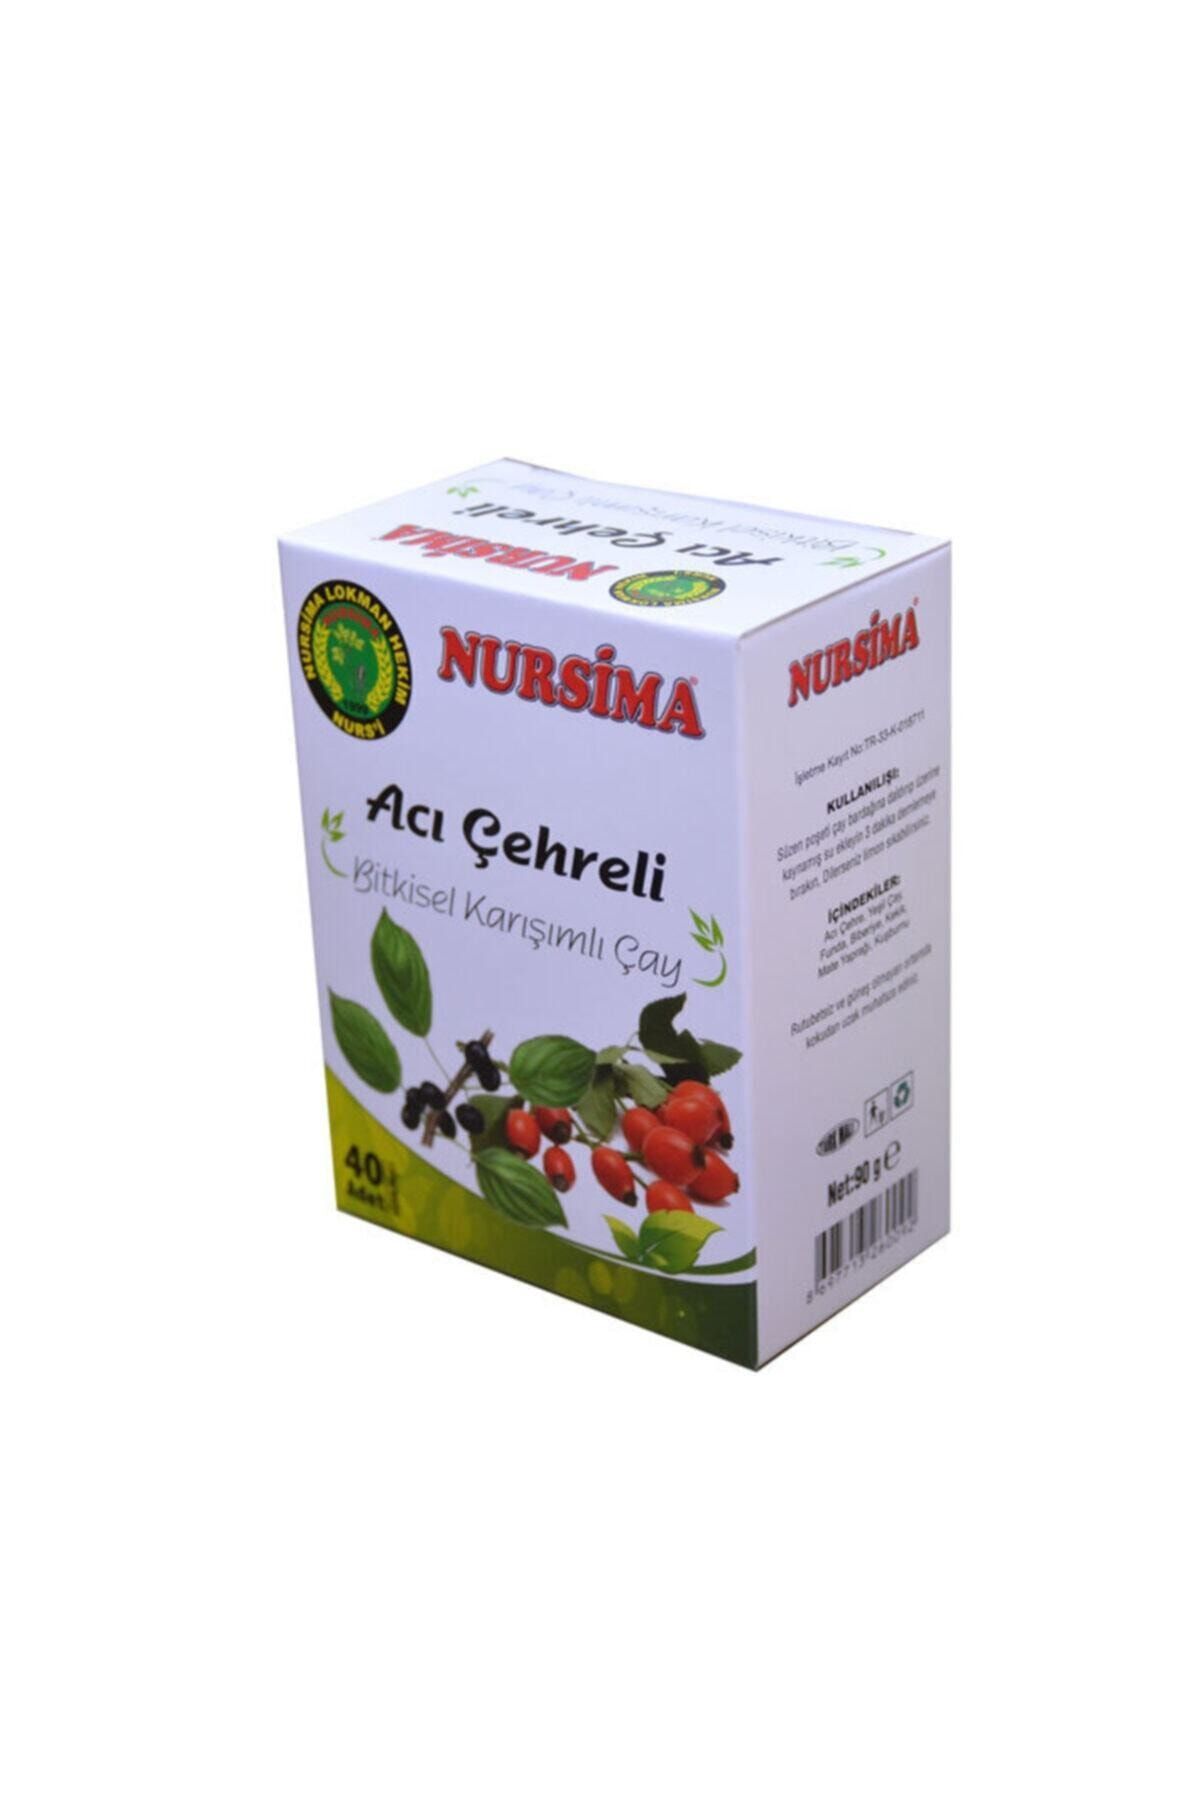 Nursima Acı Çehreli Bitkisel Karışımlı Çay ( Bağırsak Düzenleyici )- 40 Adet